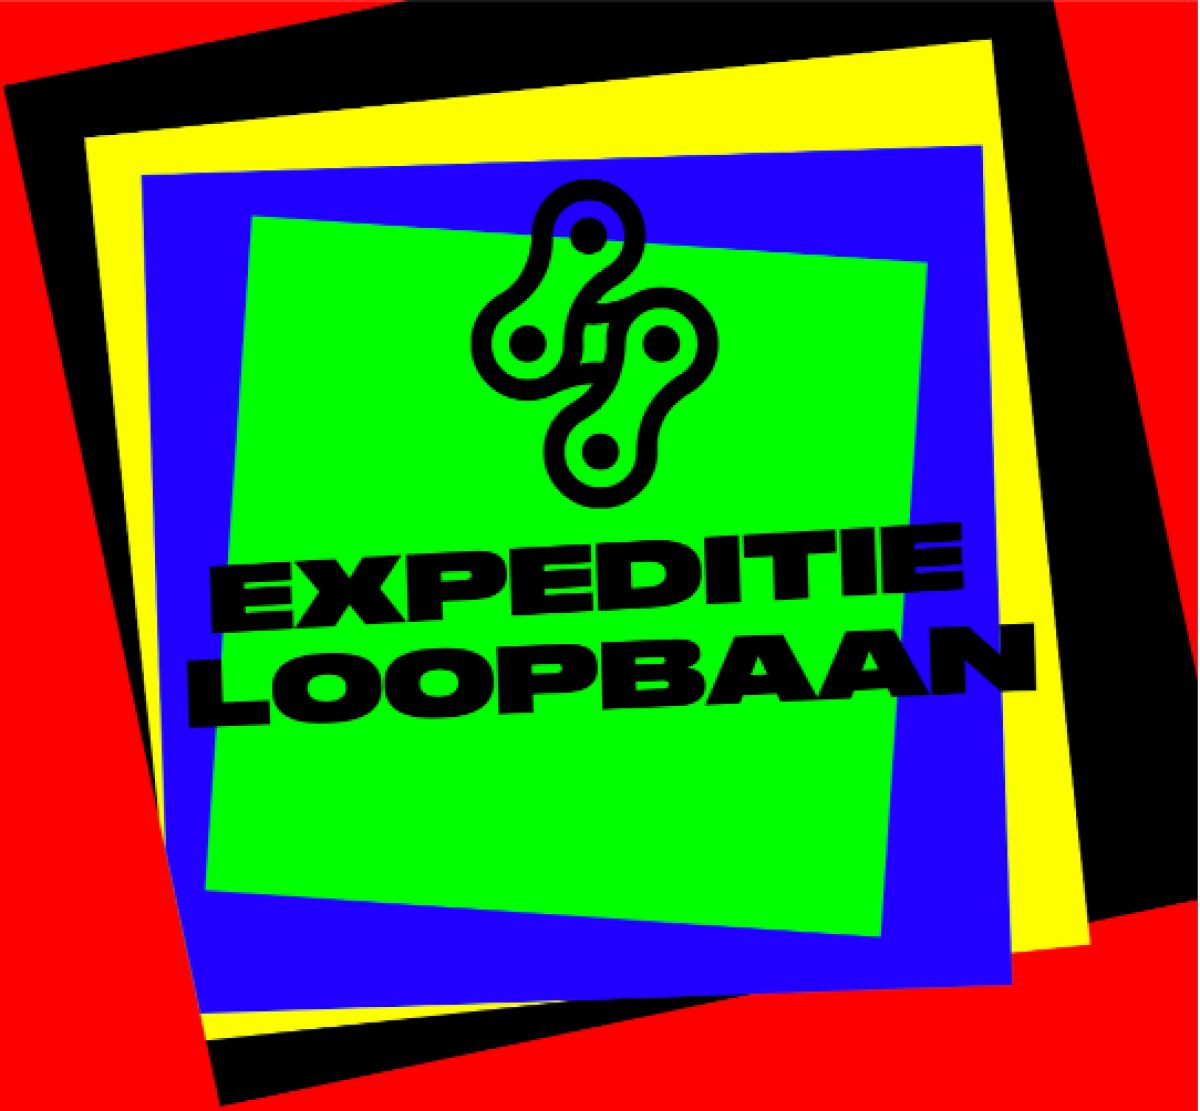 Expeditie Loopbaan